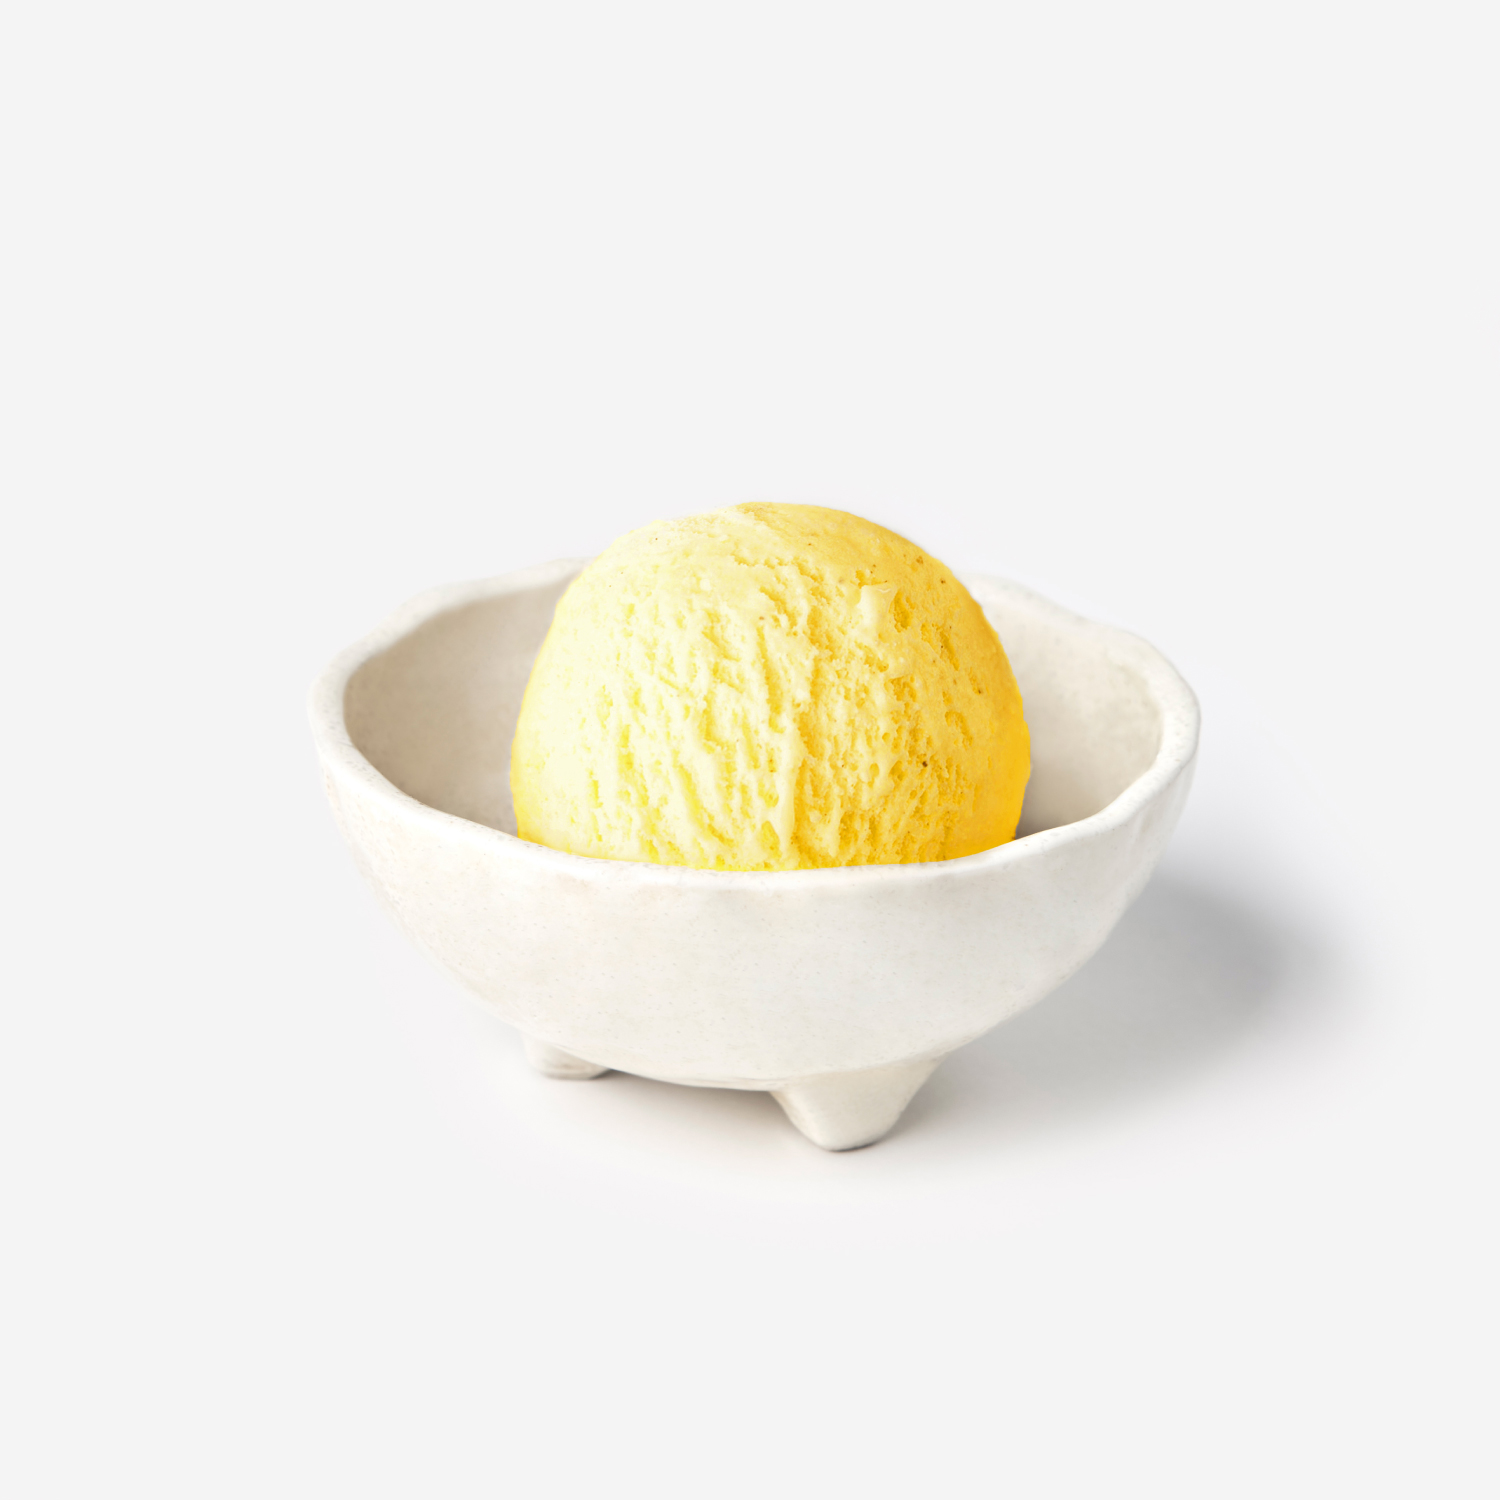 ไอศกรีม : SYNOVA ยูซุซอร์เบทไอศกรีม 4 L (แพน)